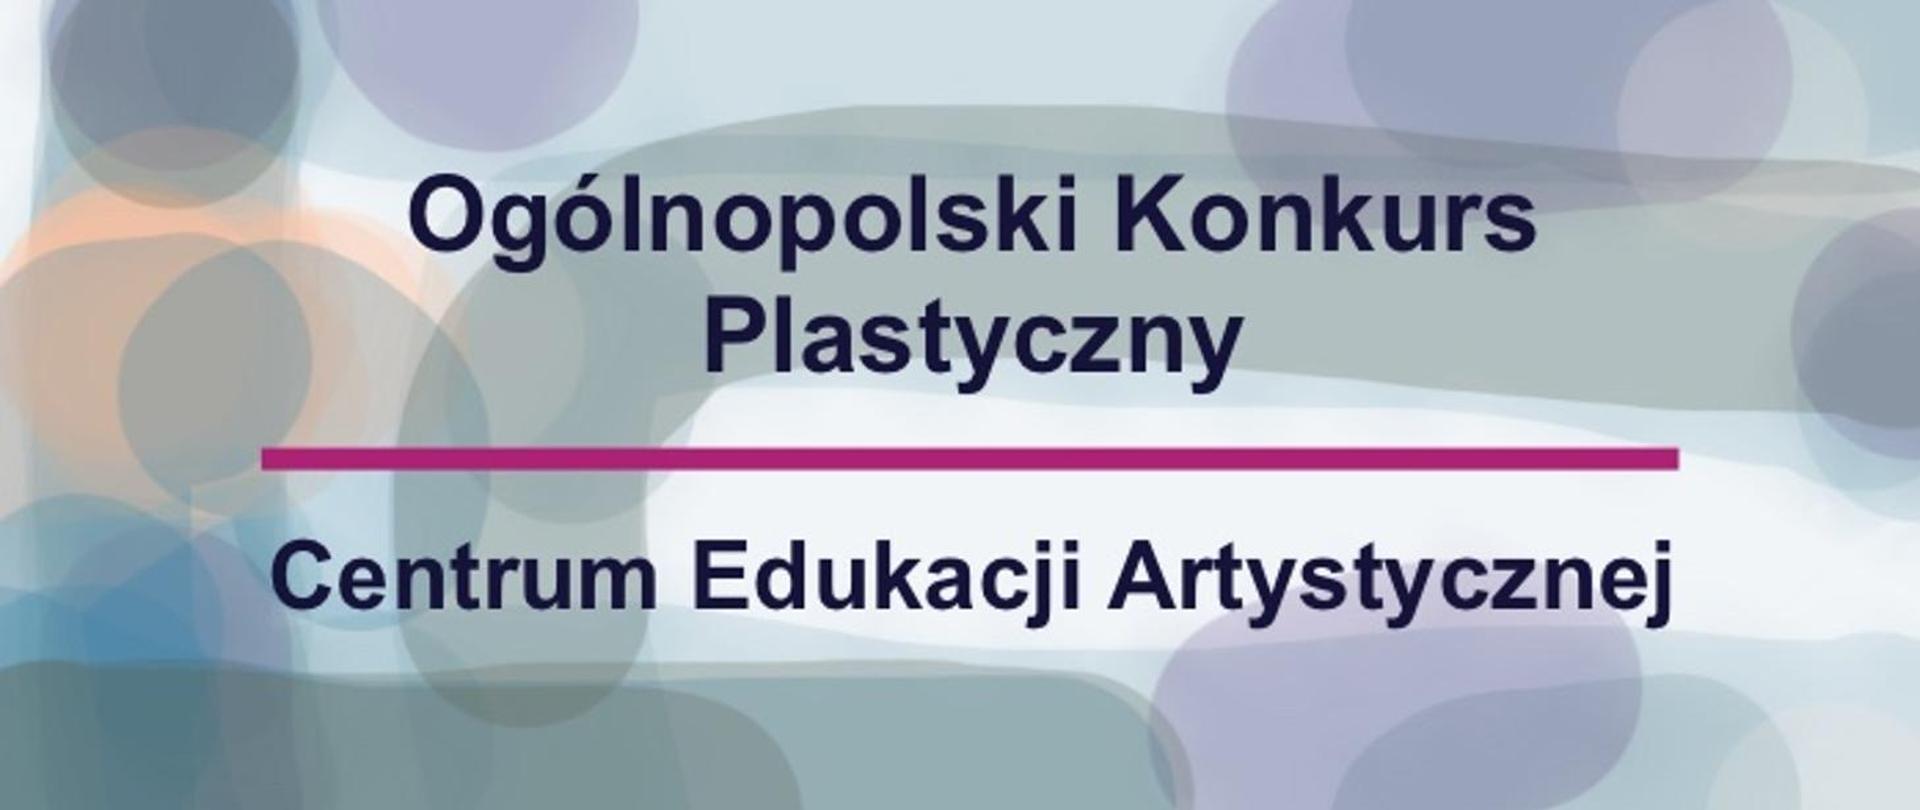 Ogólnopolski Konkurs Plastyczny Centrum Edukacji Artystycznej